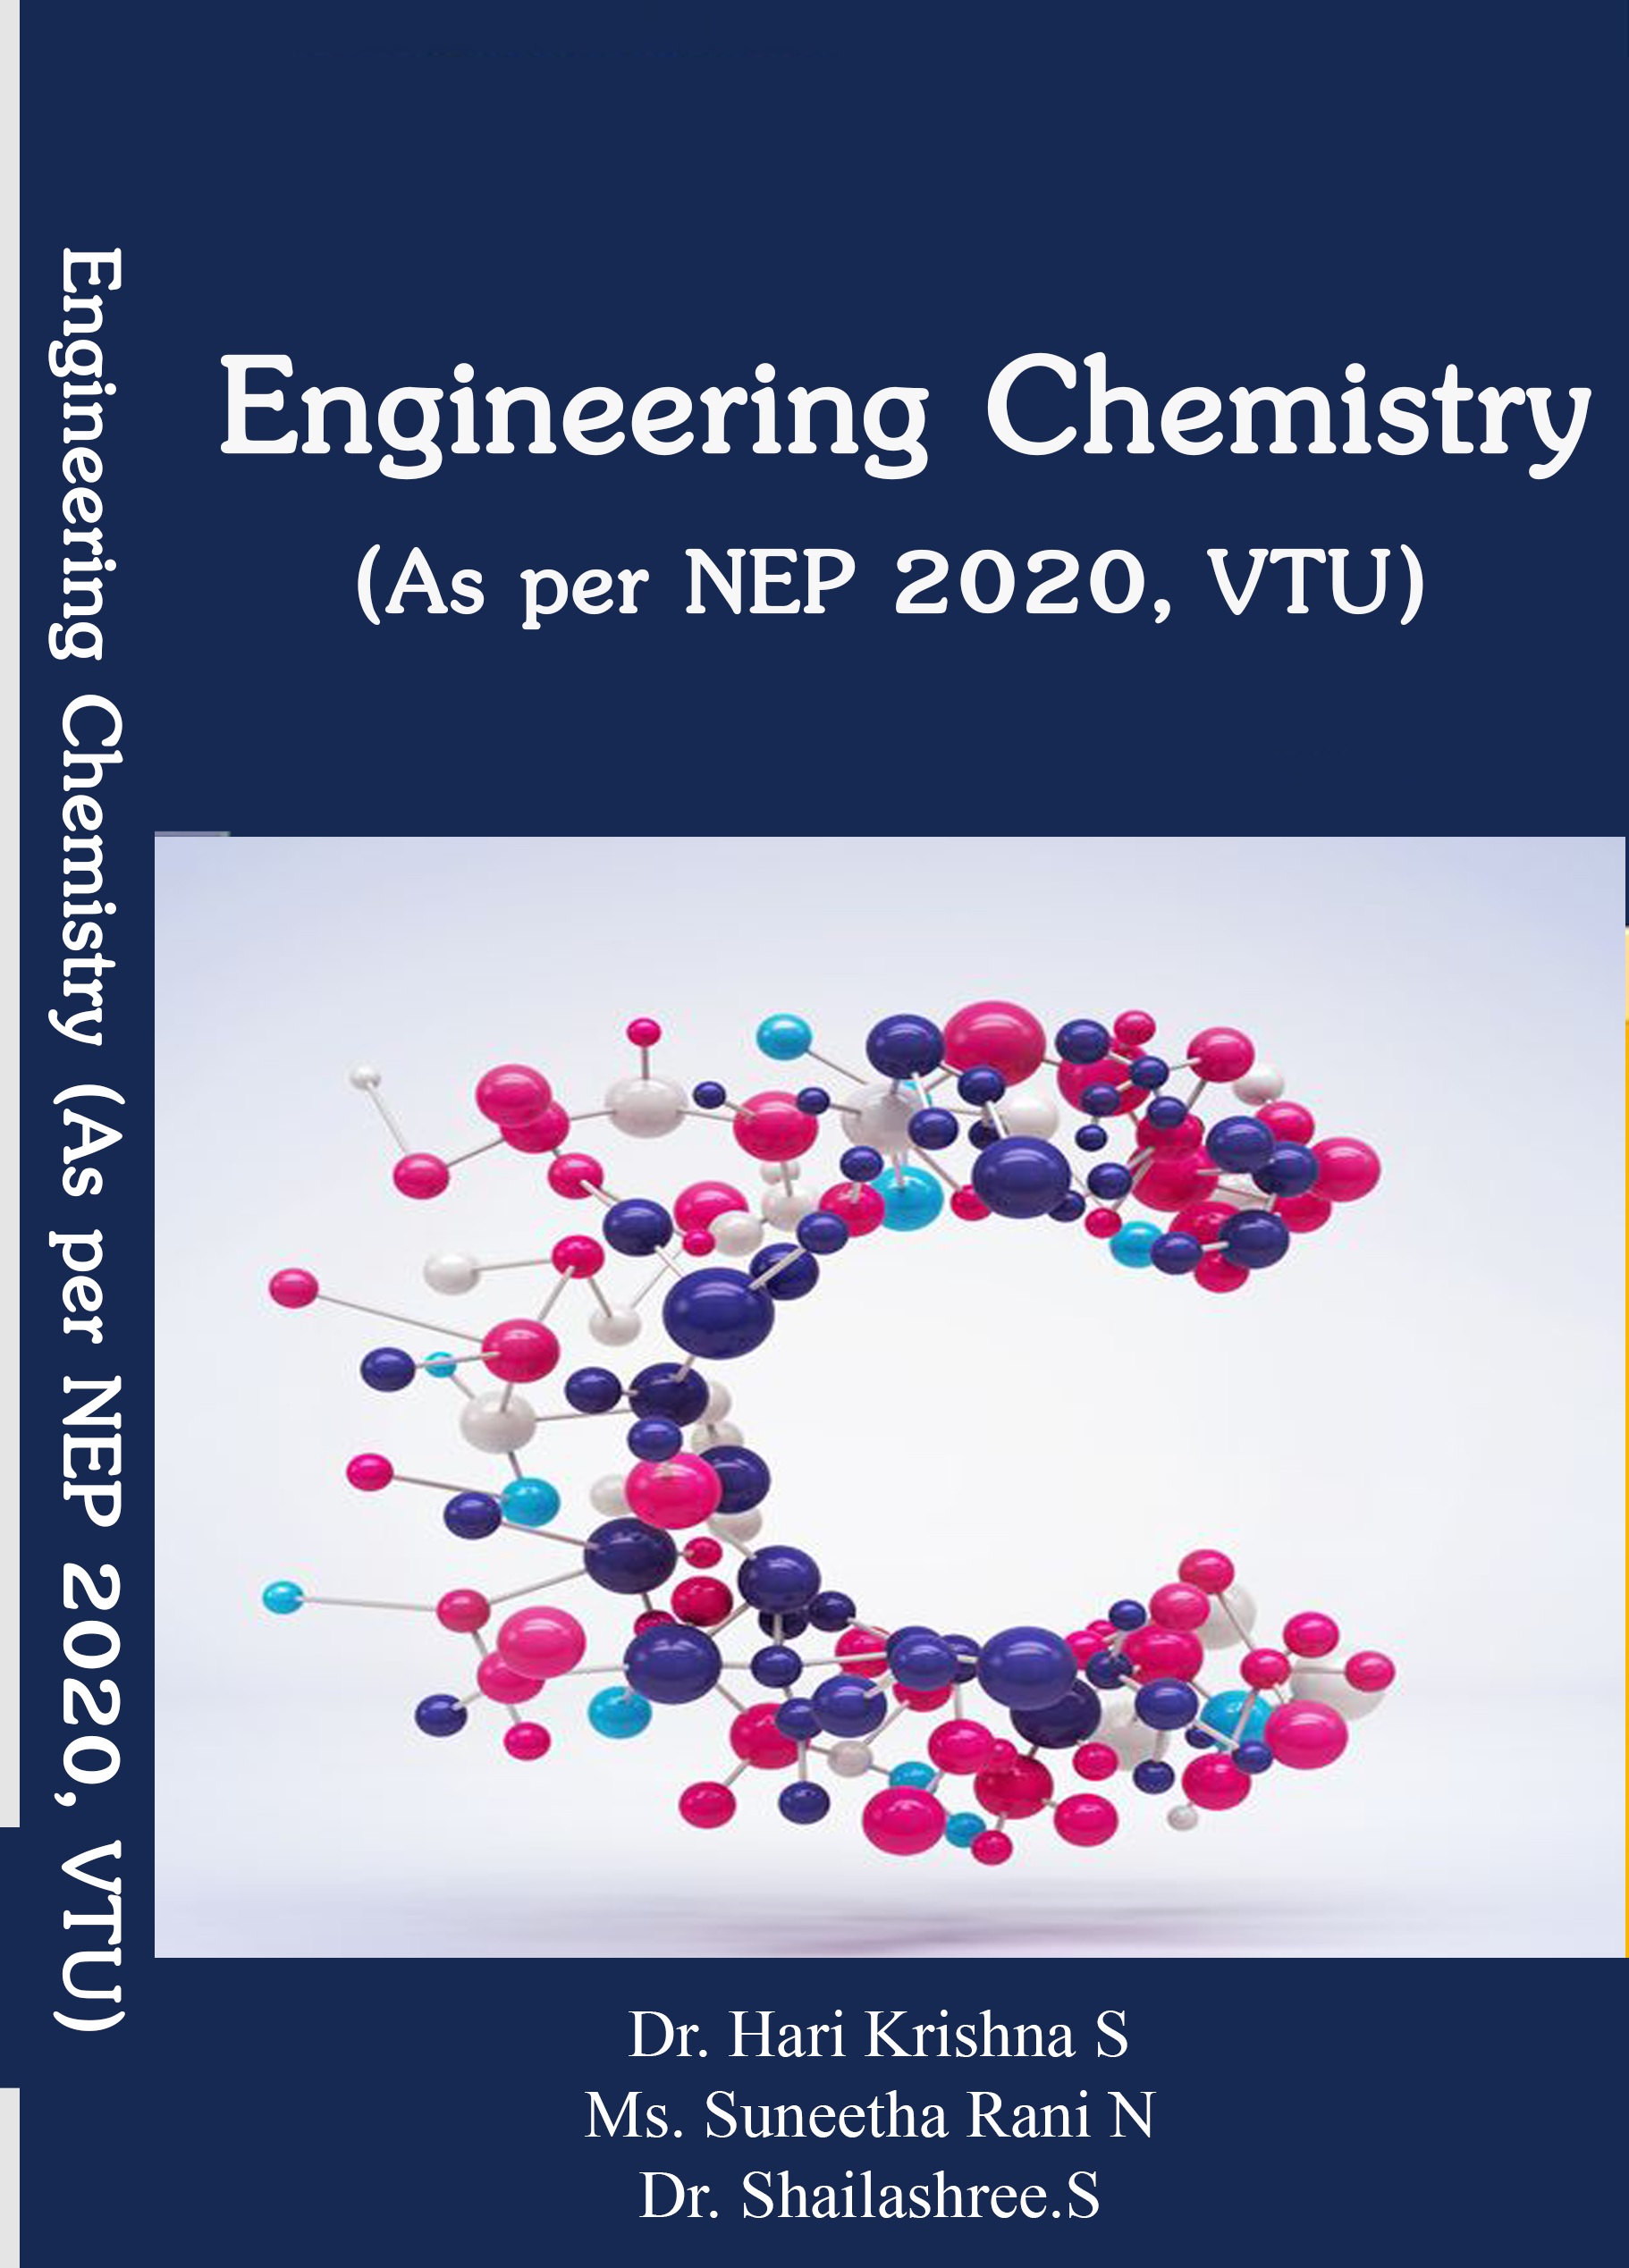 ENGINEERING CHEMISTRY (AS PER NEP 2020, VTU)